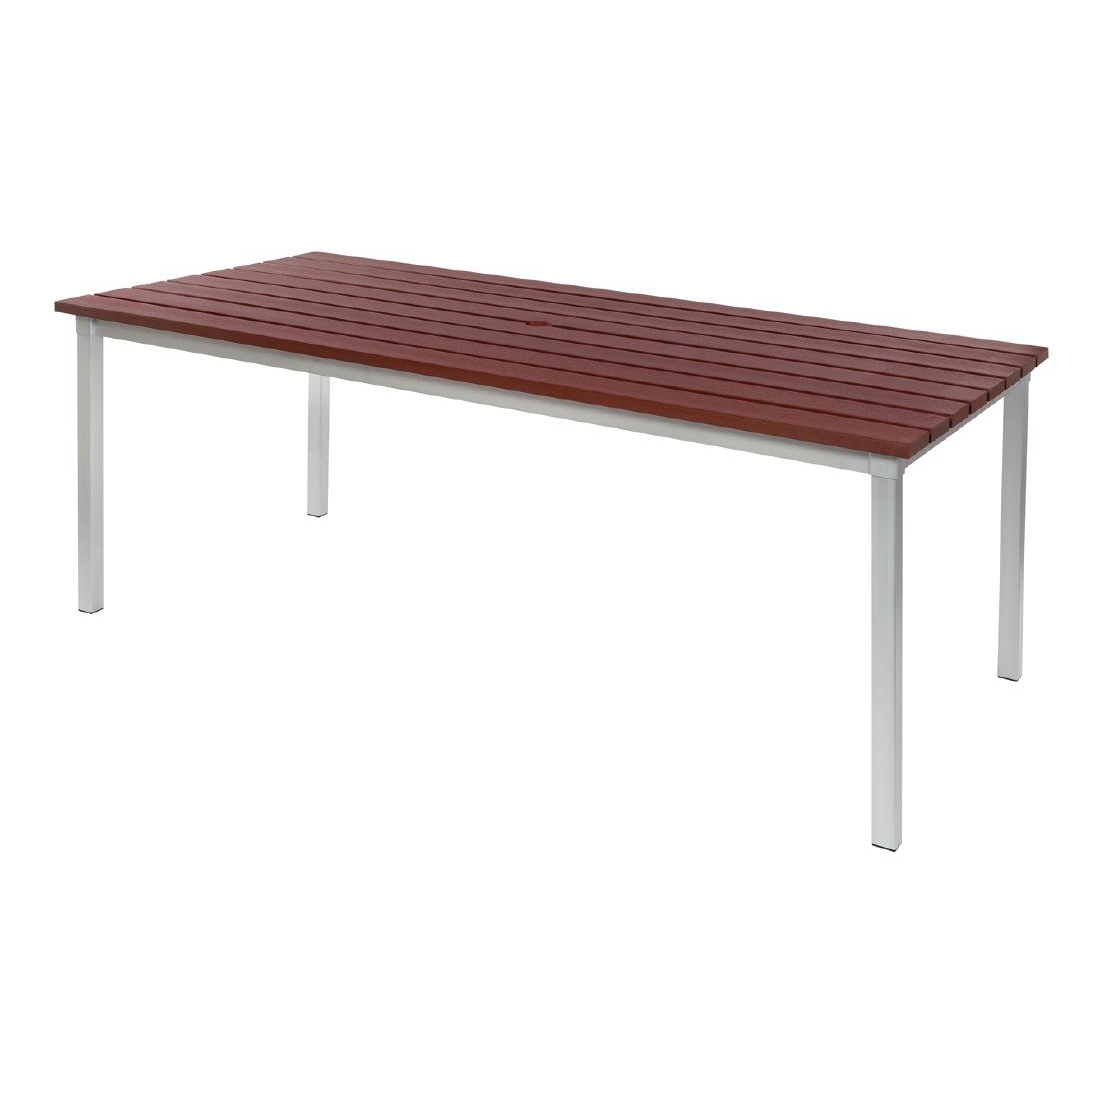 Enviro Outdoor Walnut Effect Faux Wood Table 1800mm